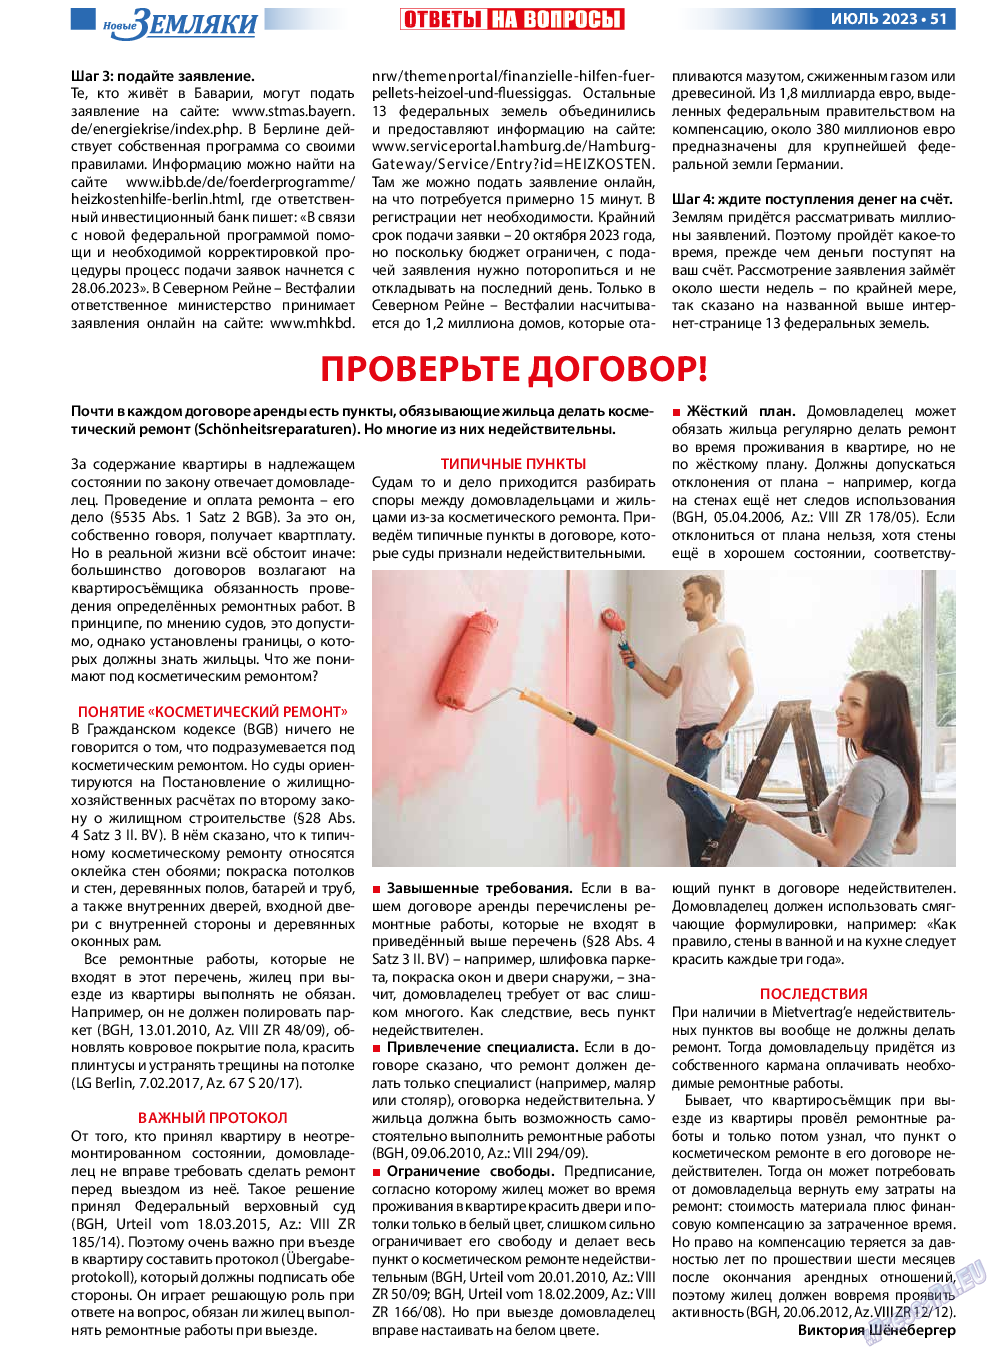 Новые Земляки, газета. 2023 №7 стр.51